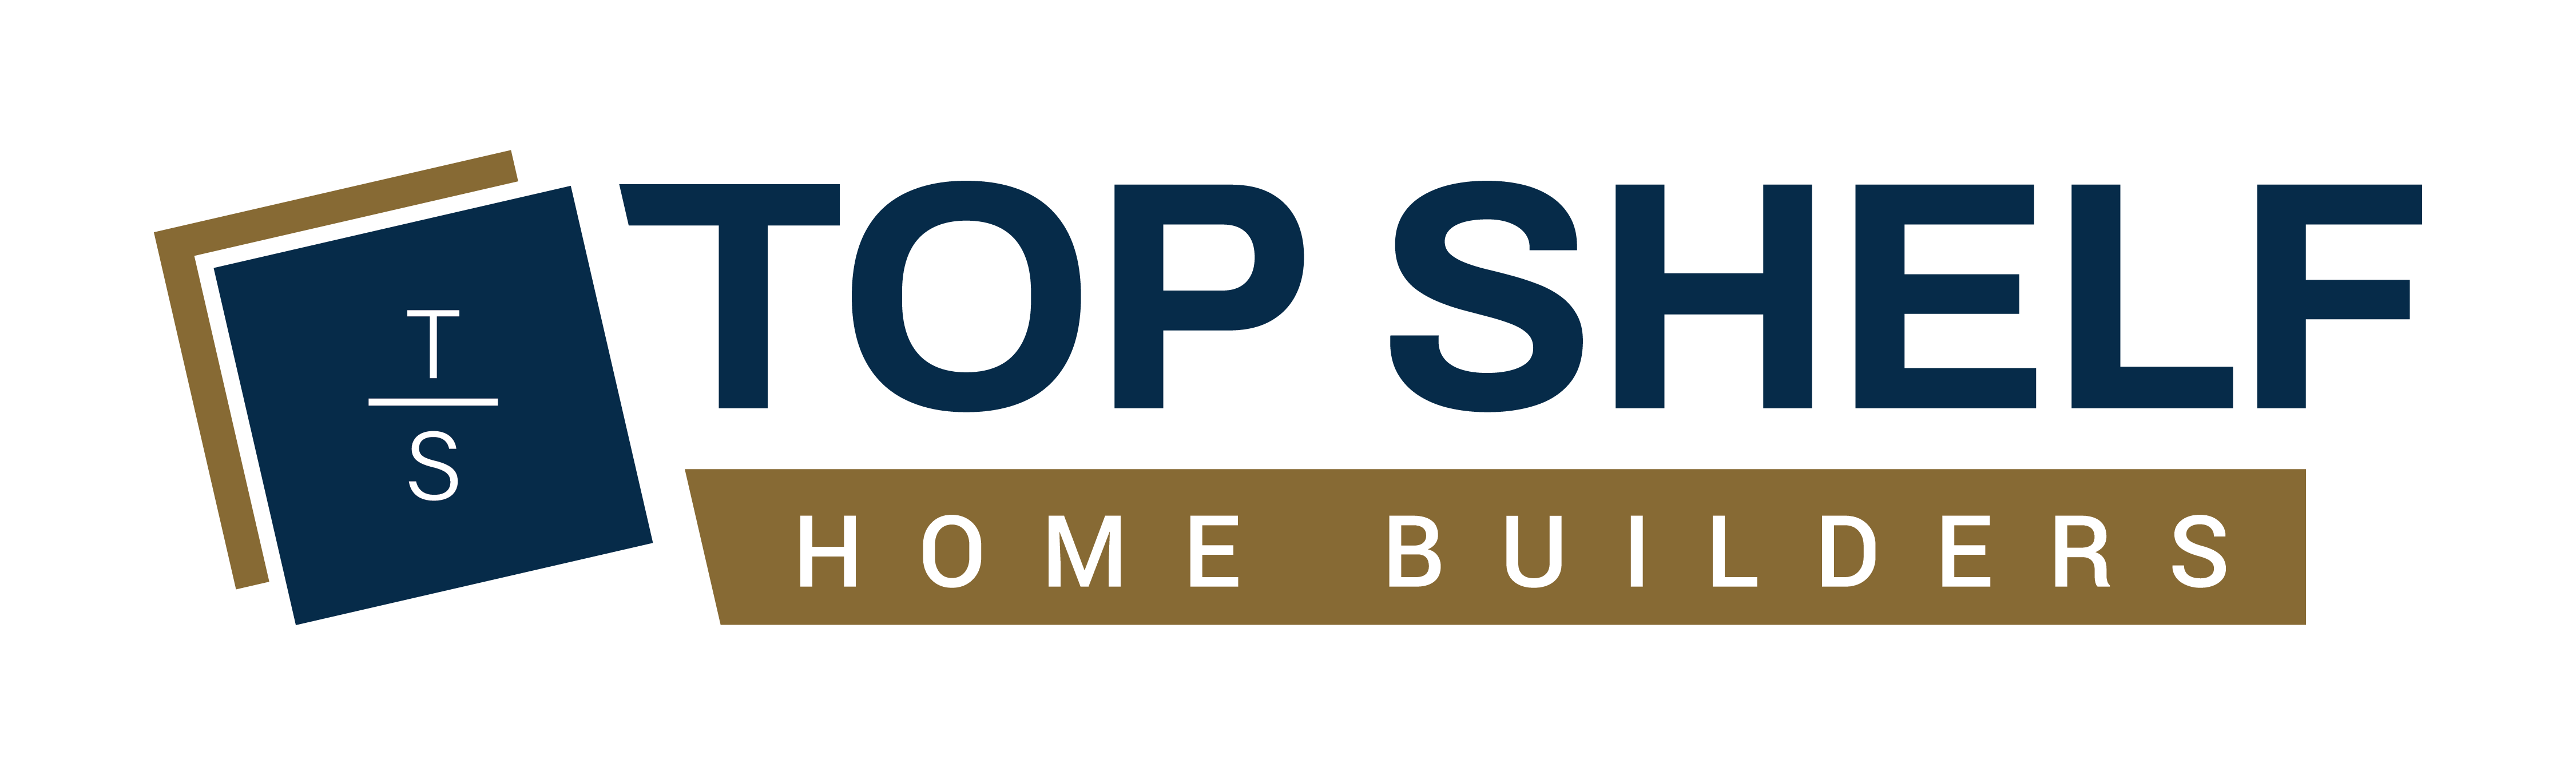 Top Shelf Home Builders logo